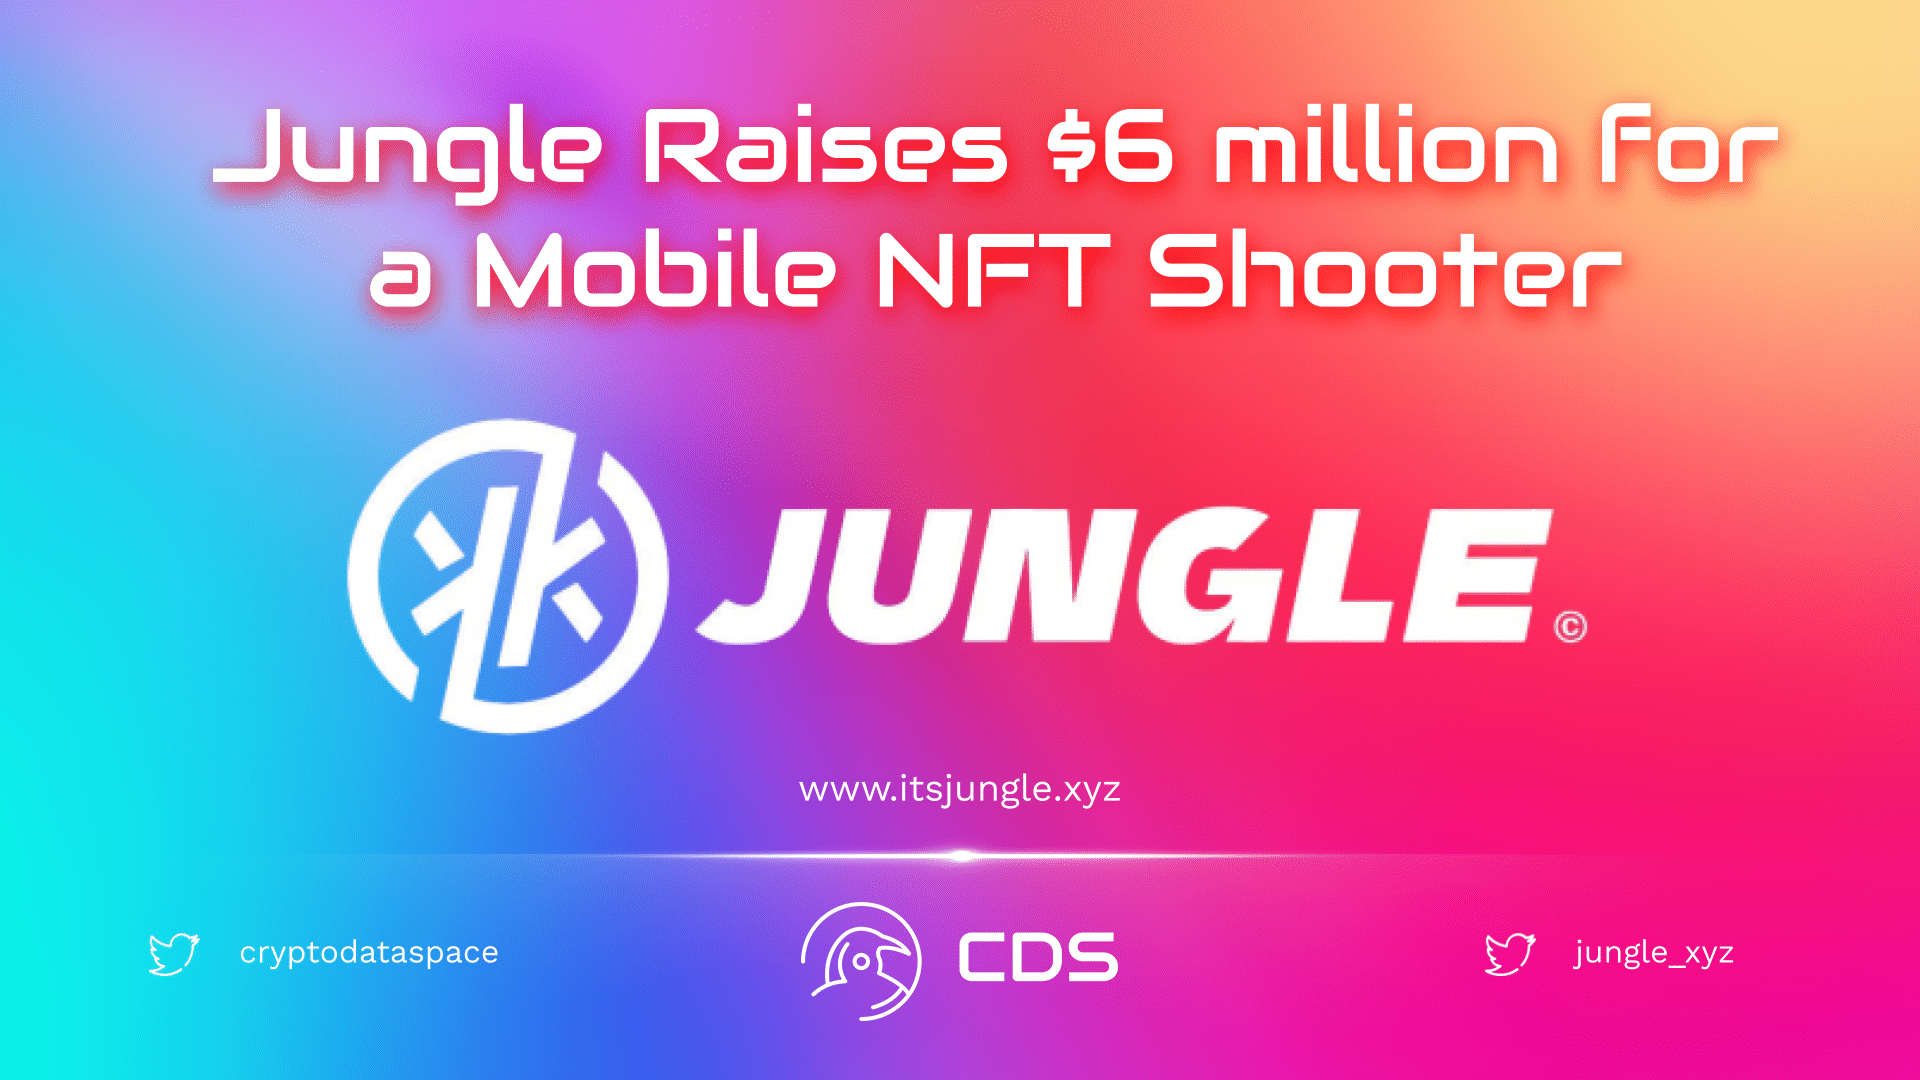 Jungle Raises $6 million for a Mobile NFT Shooter